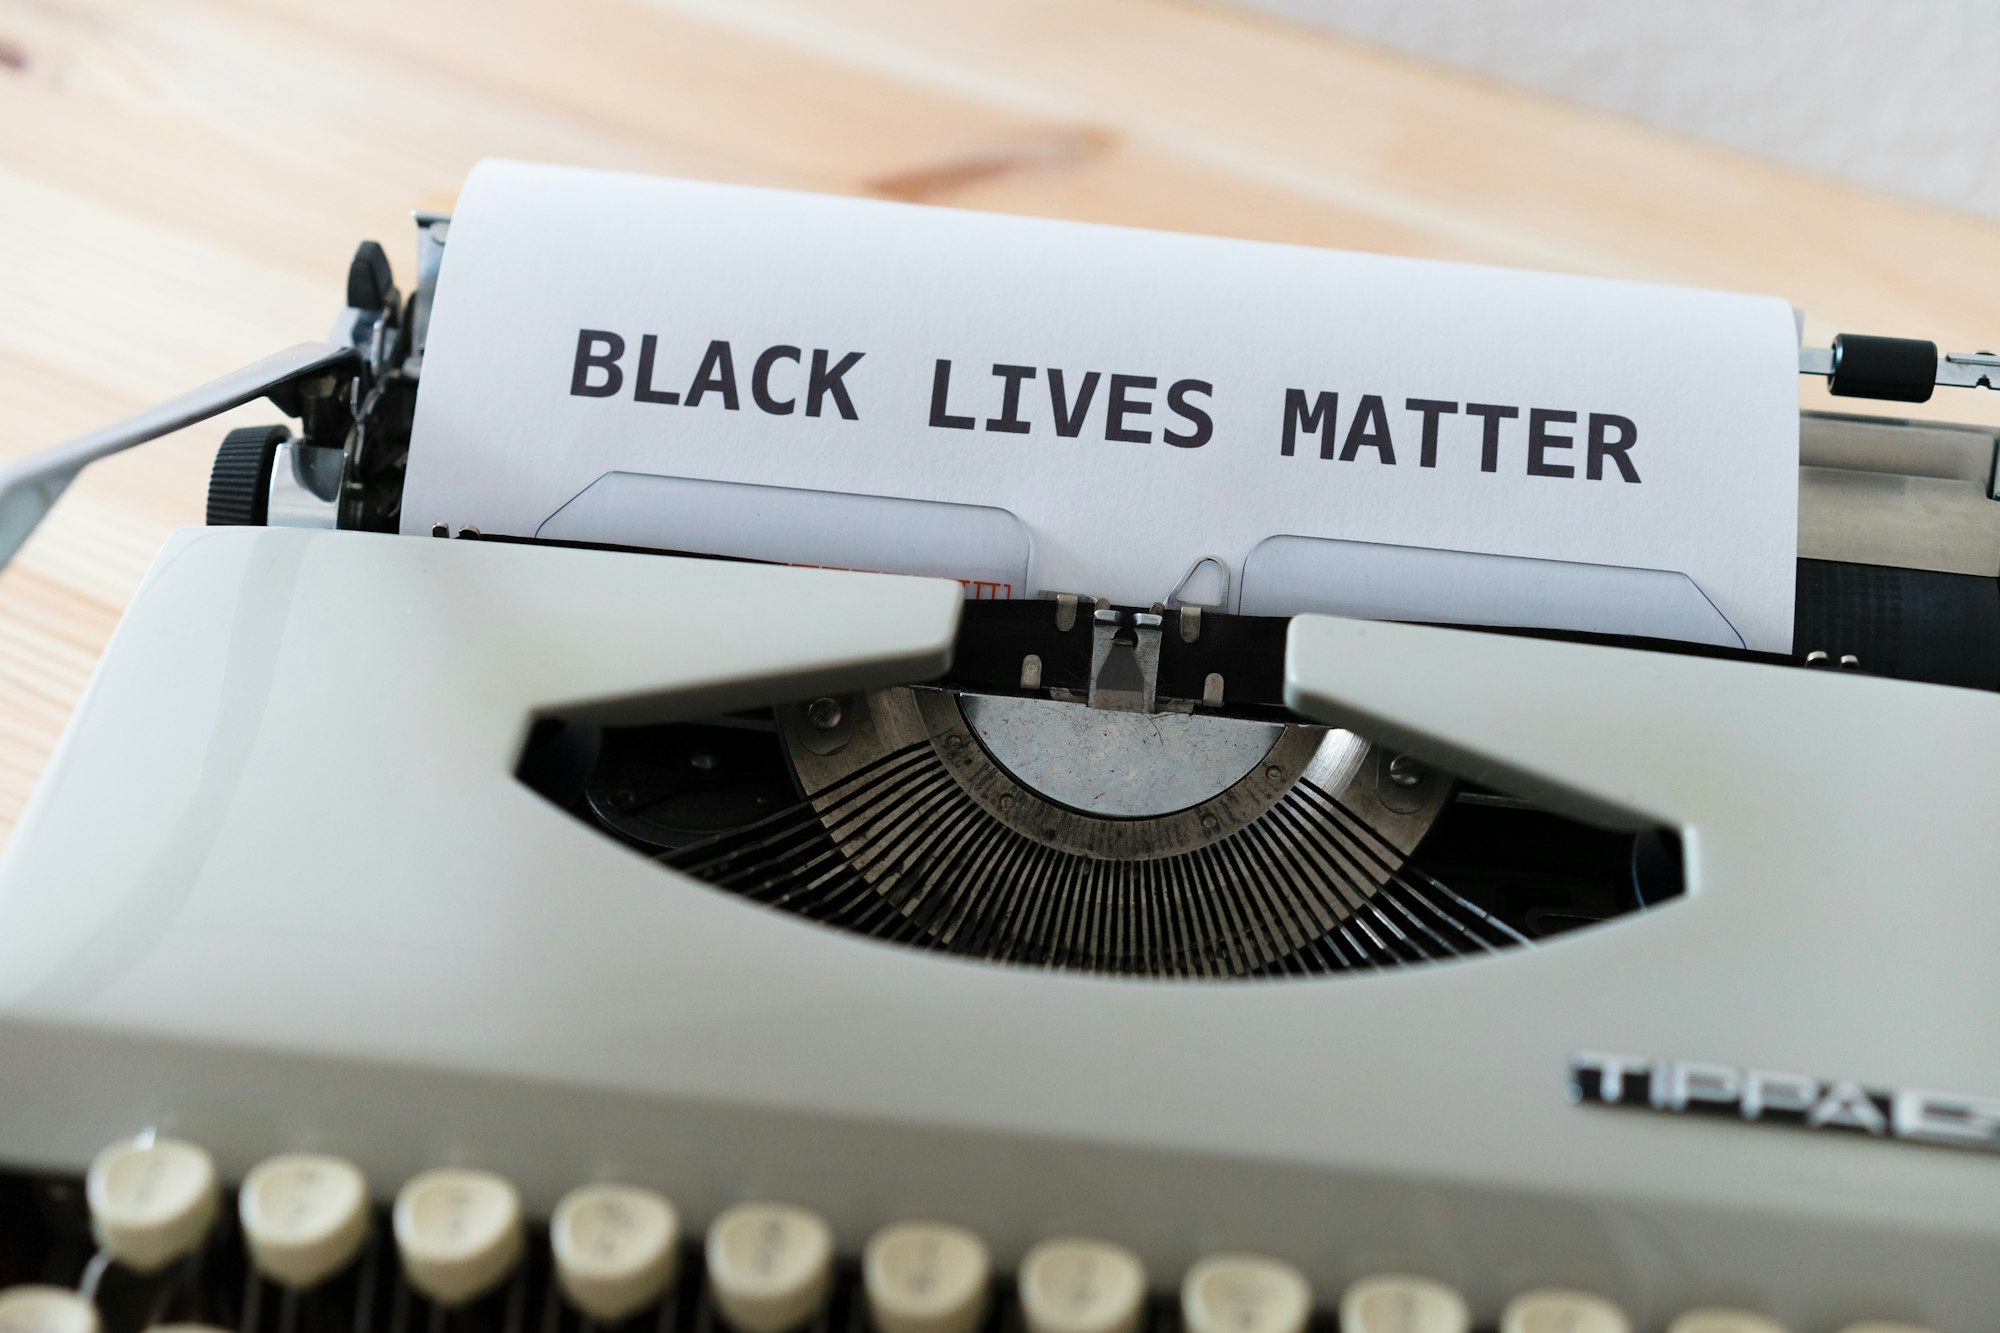 frase 'black lives matter' impressa em máquina de escrever